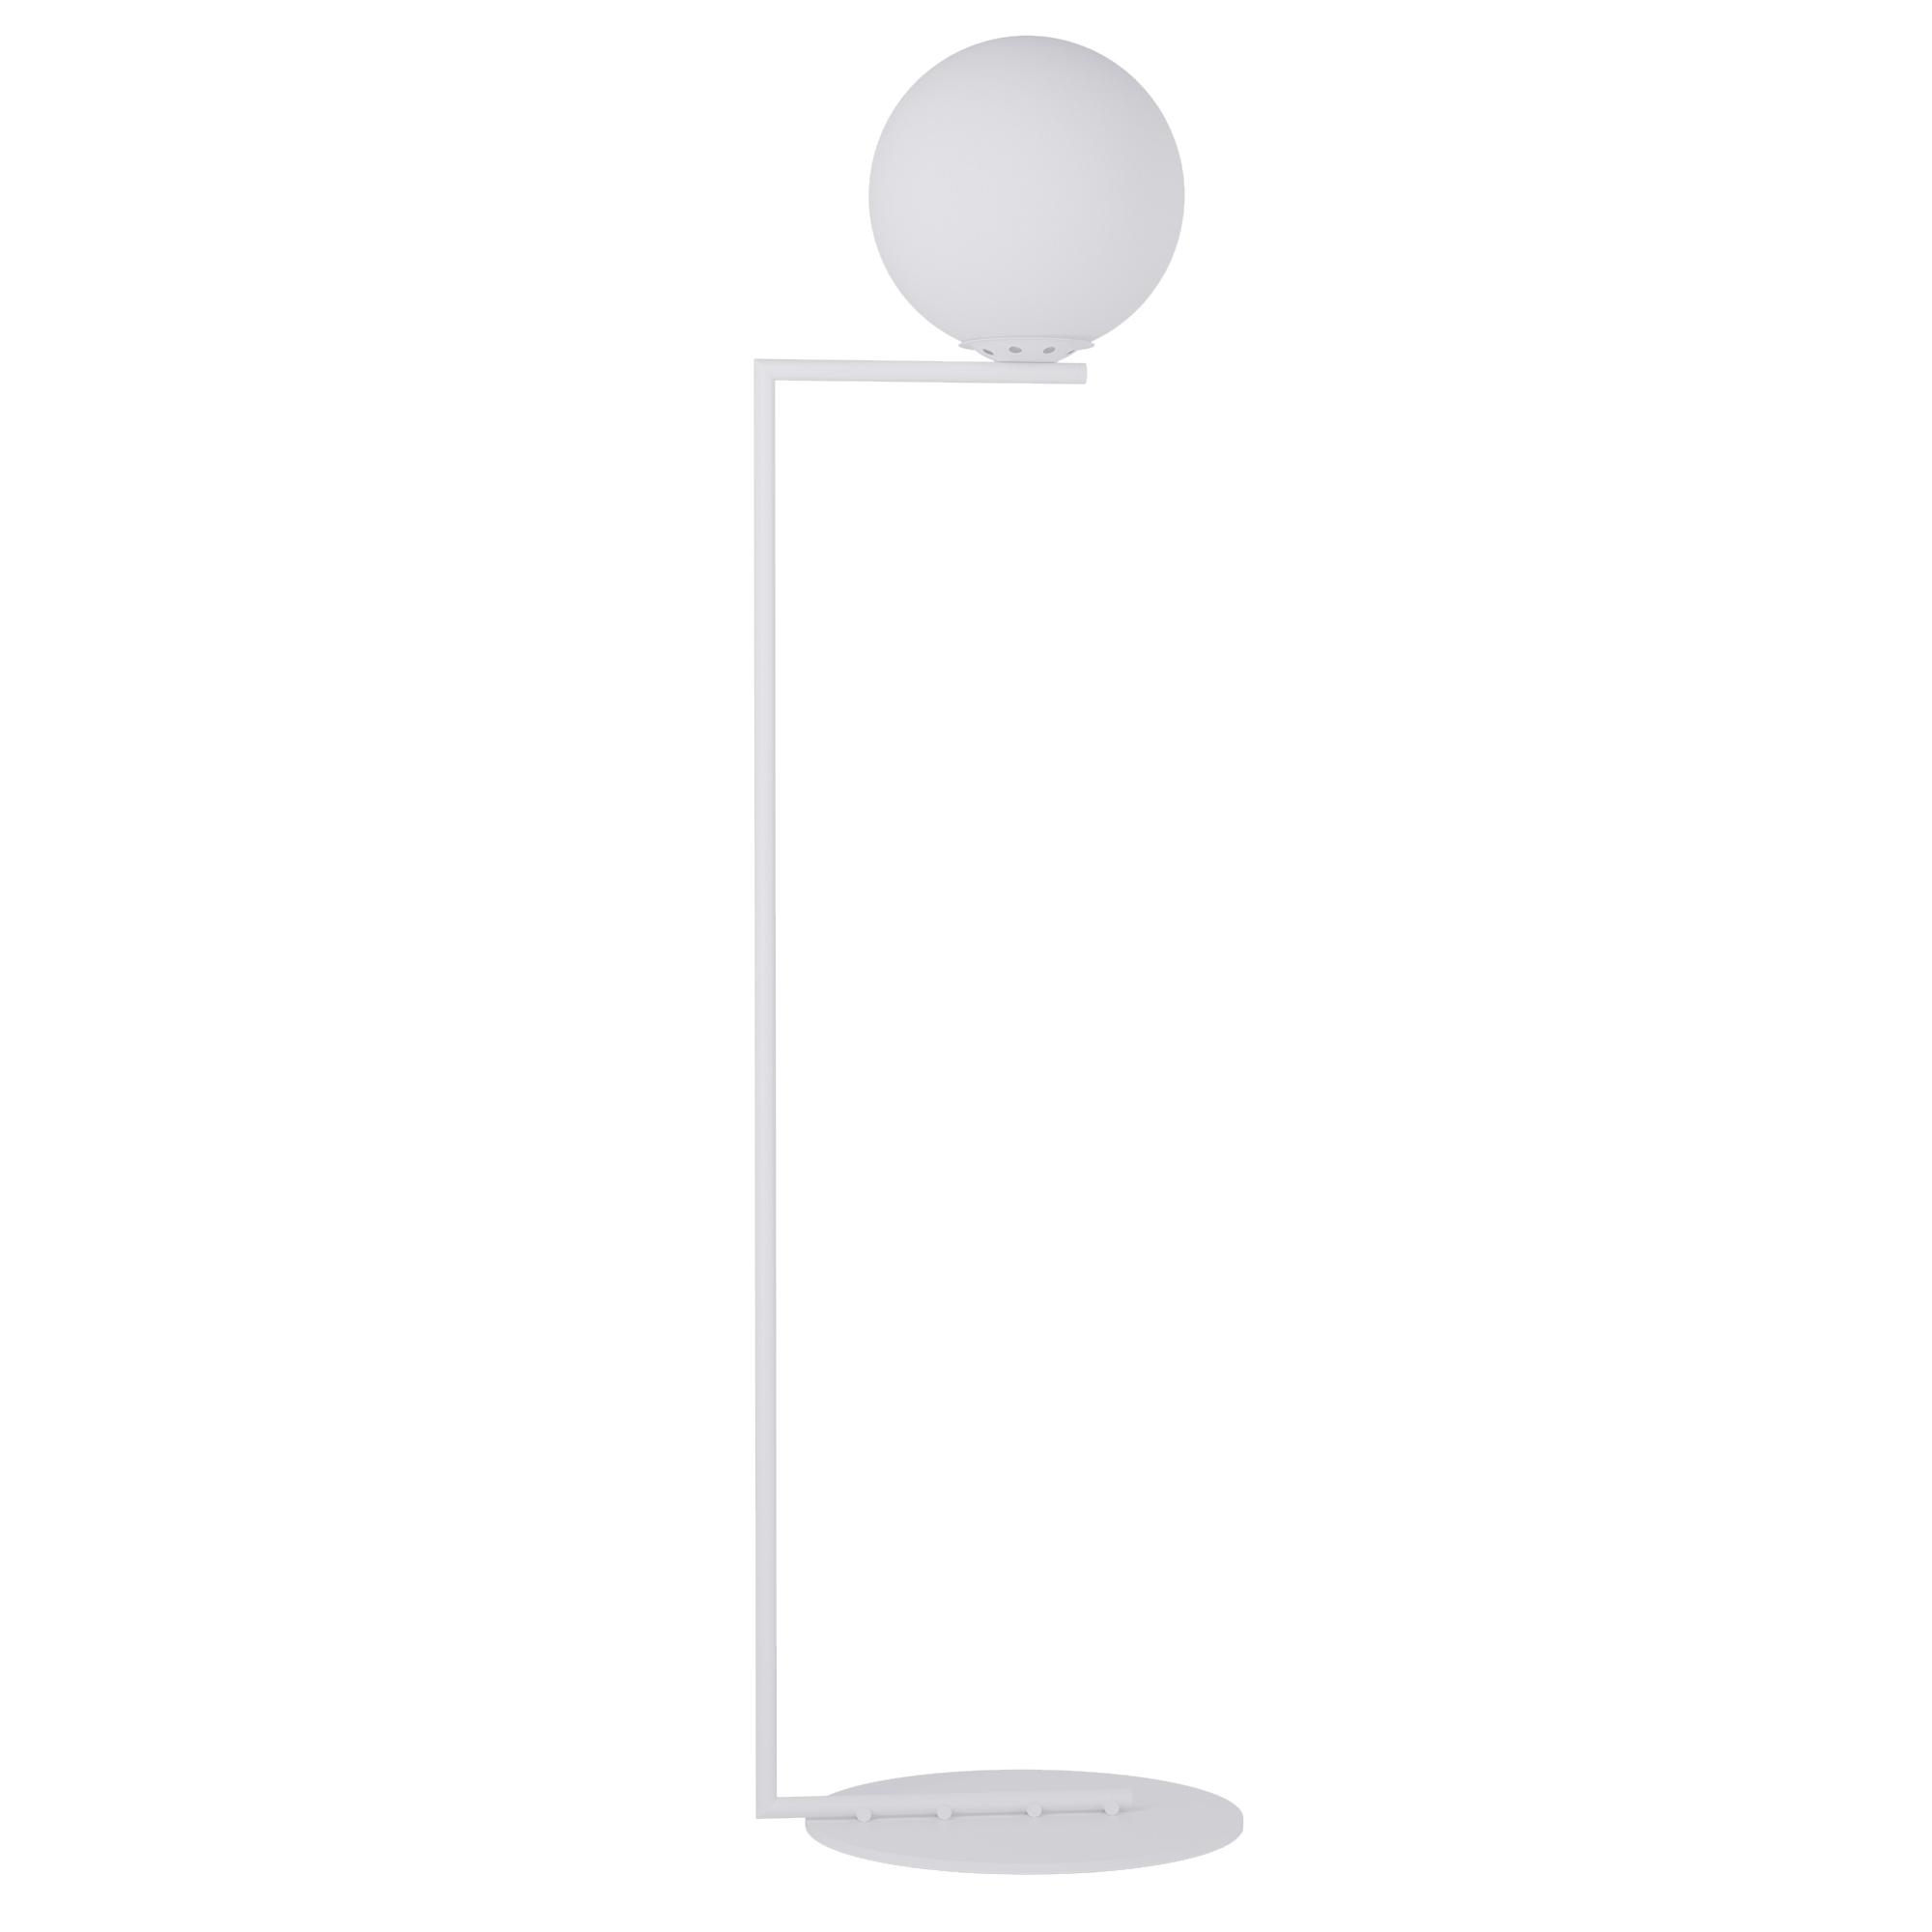 Pear floor lamp, SKU. 23645 by Pikartlights 3d model